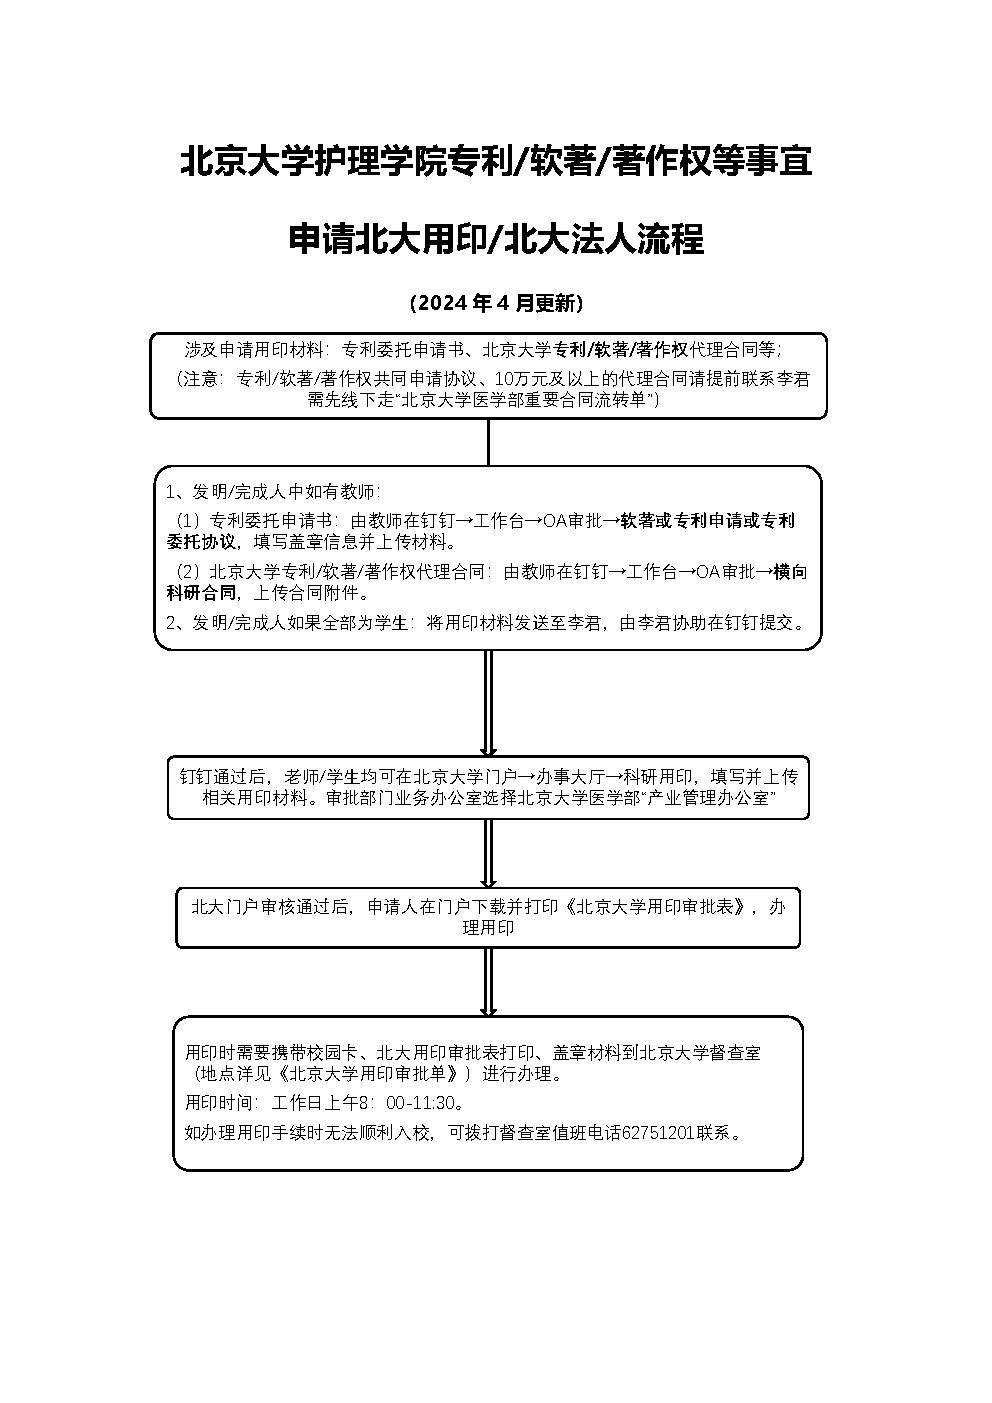 北京大学护理学院专利申请北大用印流程（2024年4月更新）.jpg